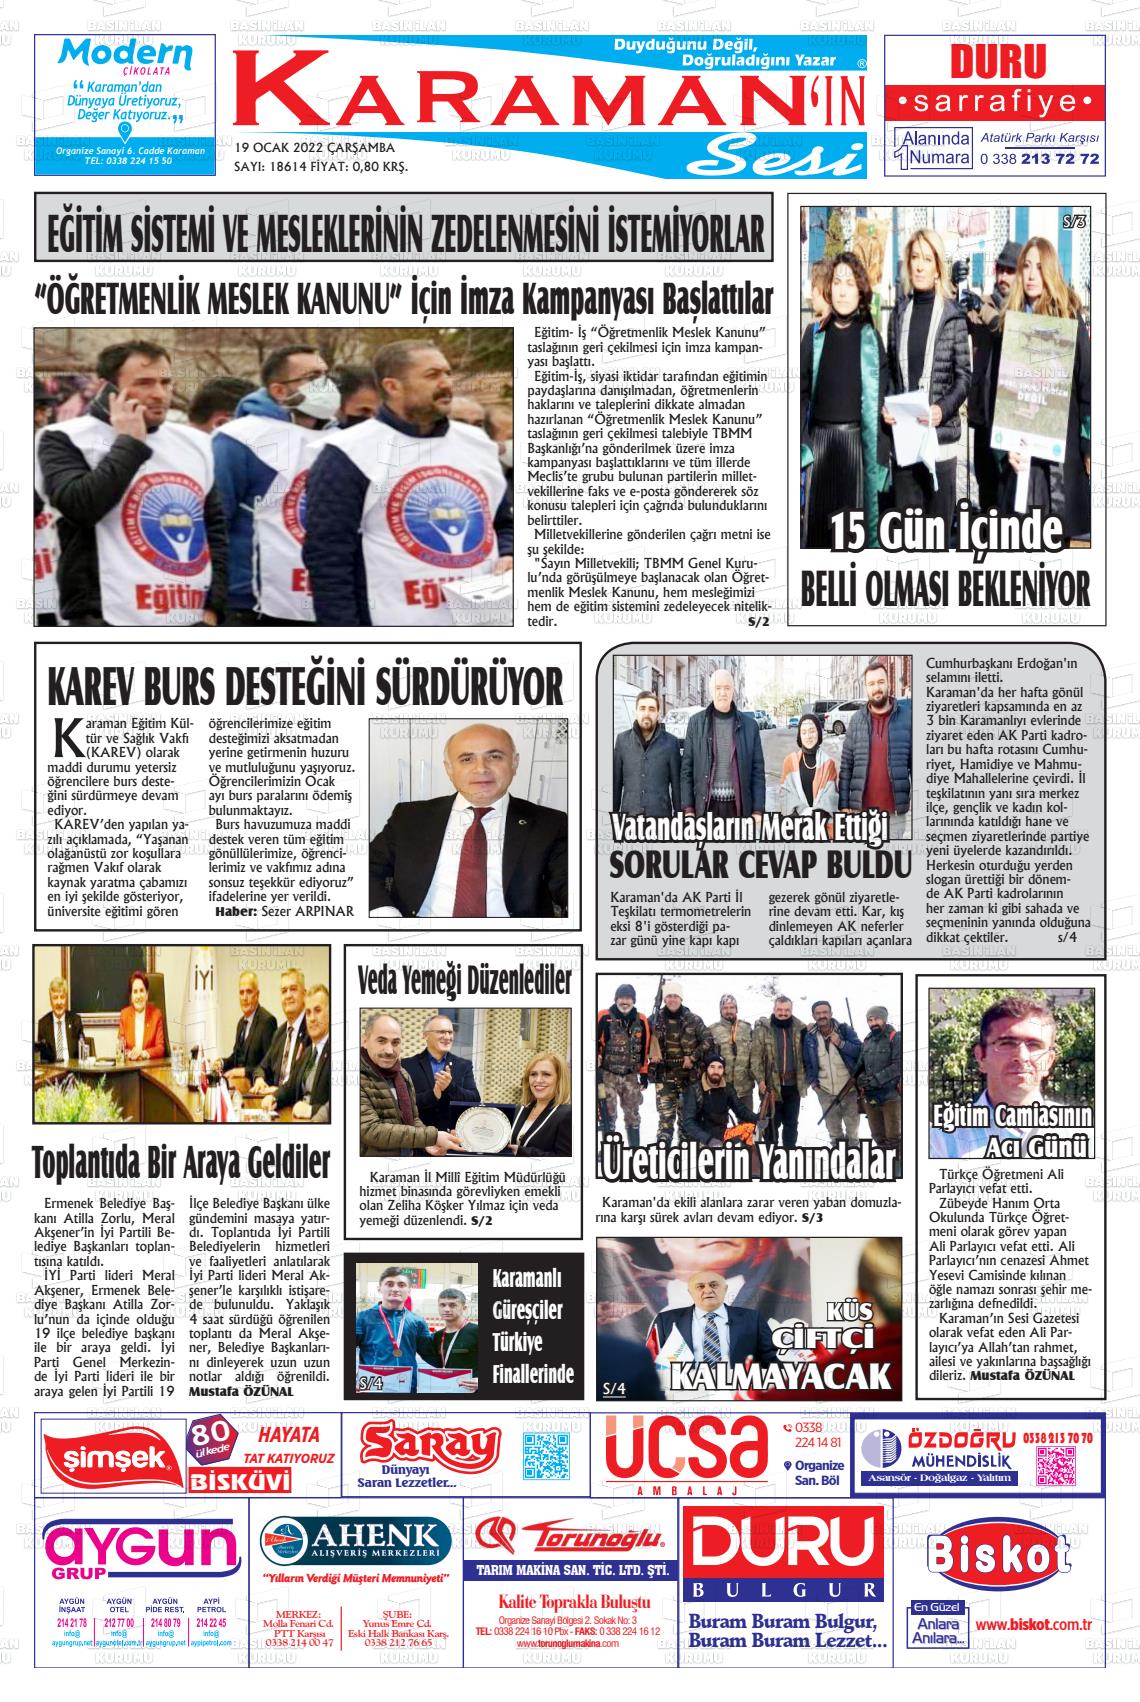 19 Ocak 2022 Karaman'ın Sesi Gazete Manşeti